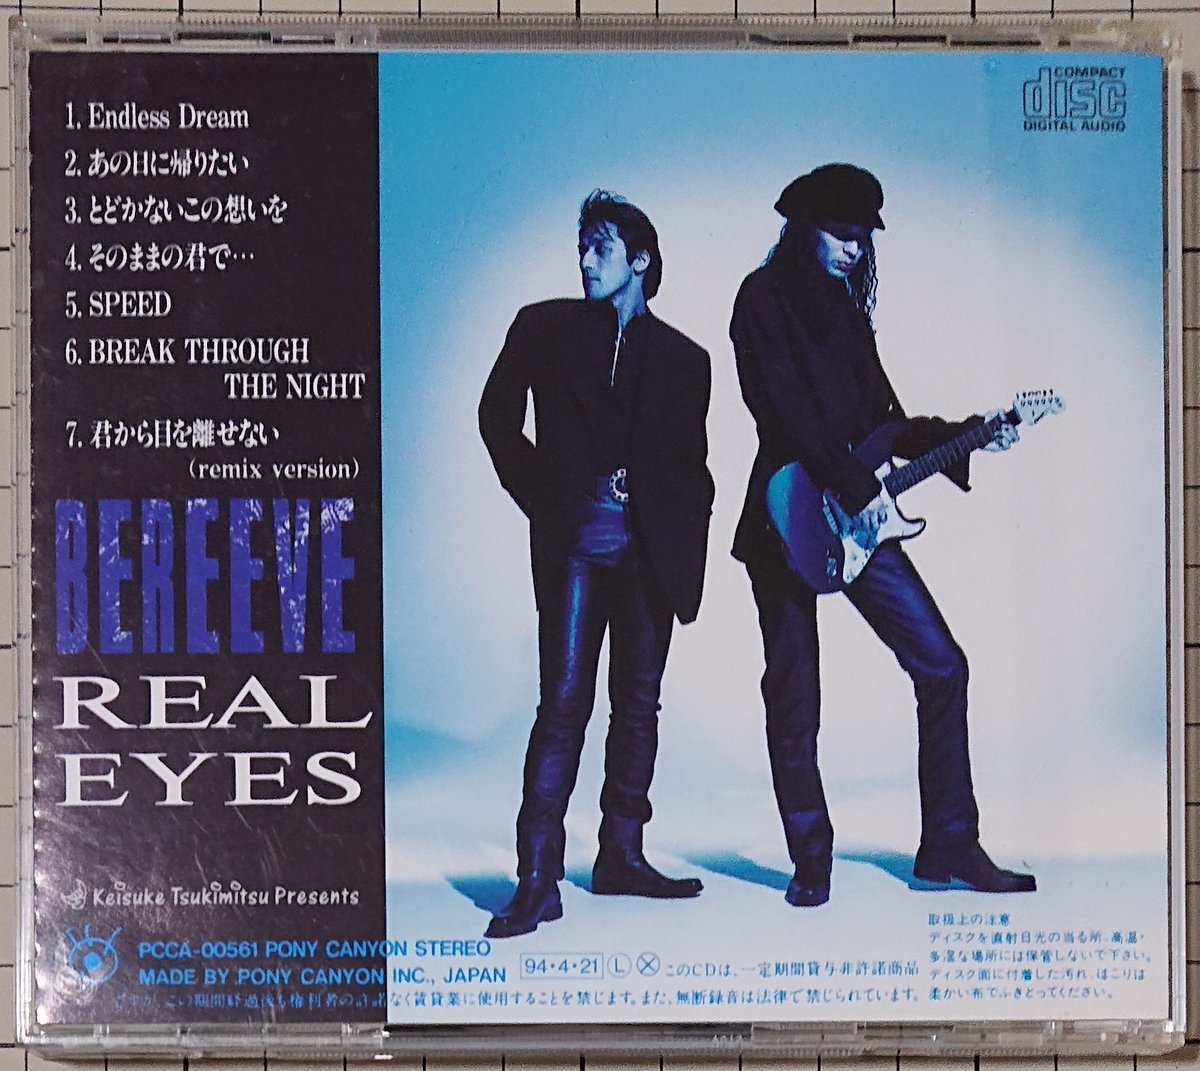 1994年4月21日
「REAL EYES」
BEREEVE

多分、みんな知らないって言うユニット
おかしいなあ、結構かかってたけど
「本気でも嘘でもいい」の人ね

デビューアルバム
ミニアルバム扱いかな
ちょうど30年

このアルバムも、月光恵亮プロデュースだね
佐藤宣彦も参加していた
当時は全然認識なかった